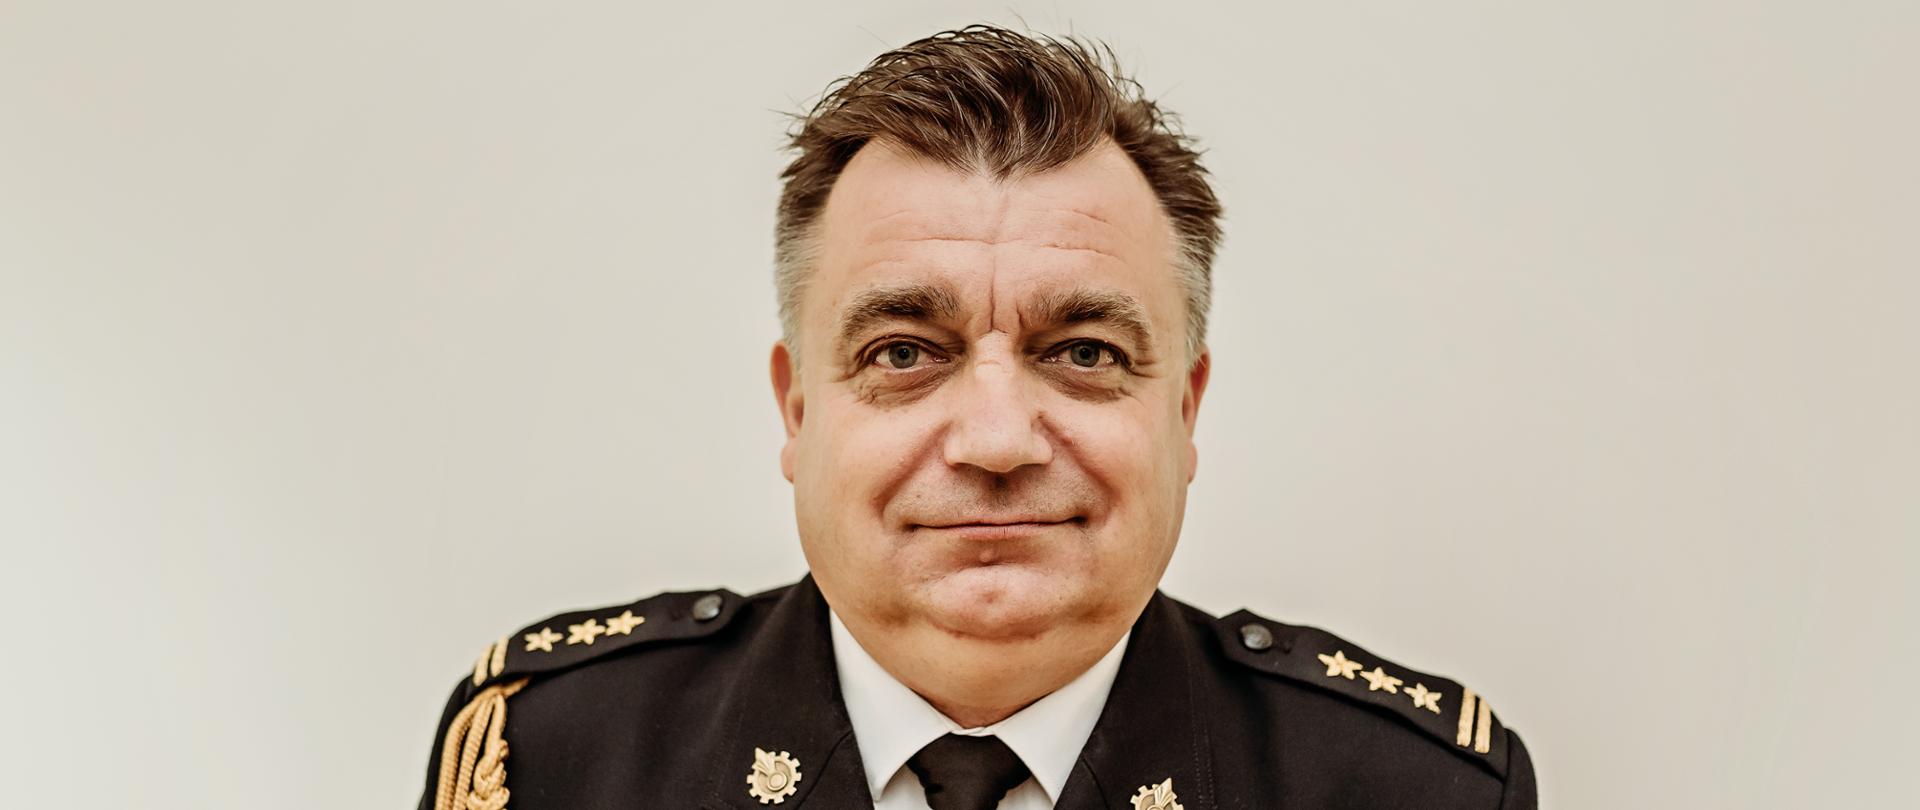 Komendant Powiatowy Państwowej Straży Pożarnej w Sierpcu st. bryg. mgr inż. Marcin Strześniewski